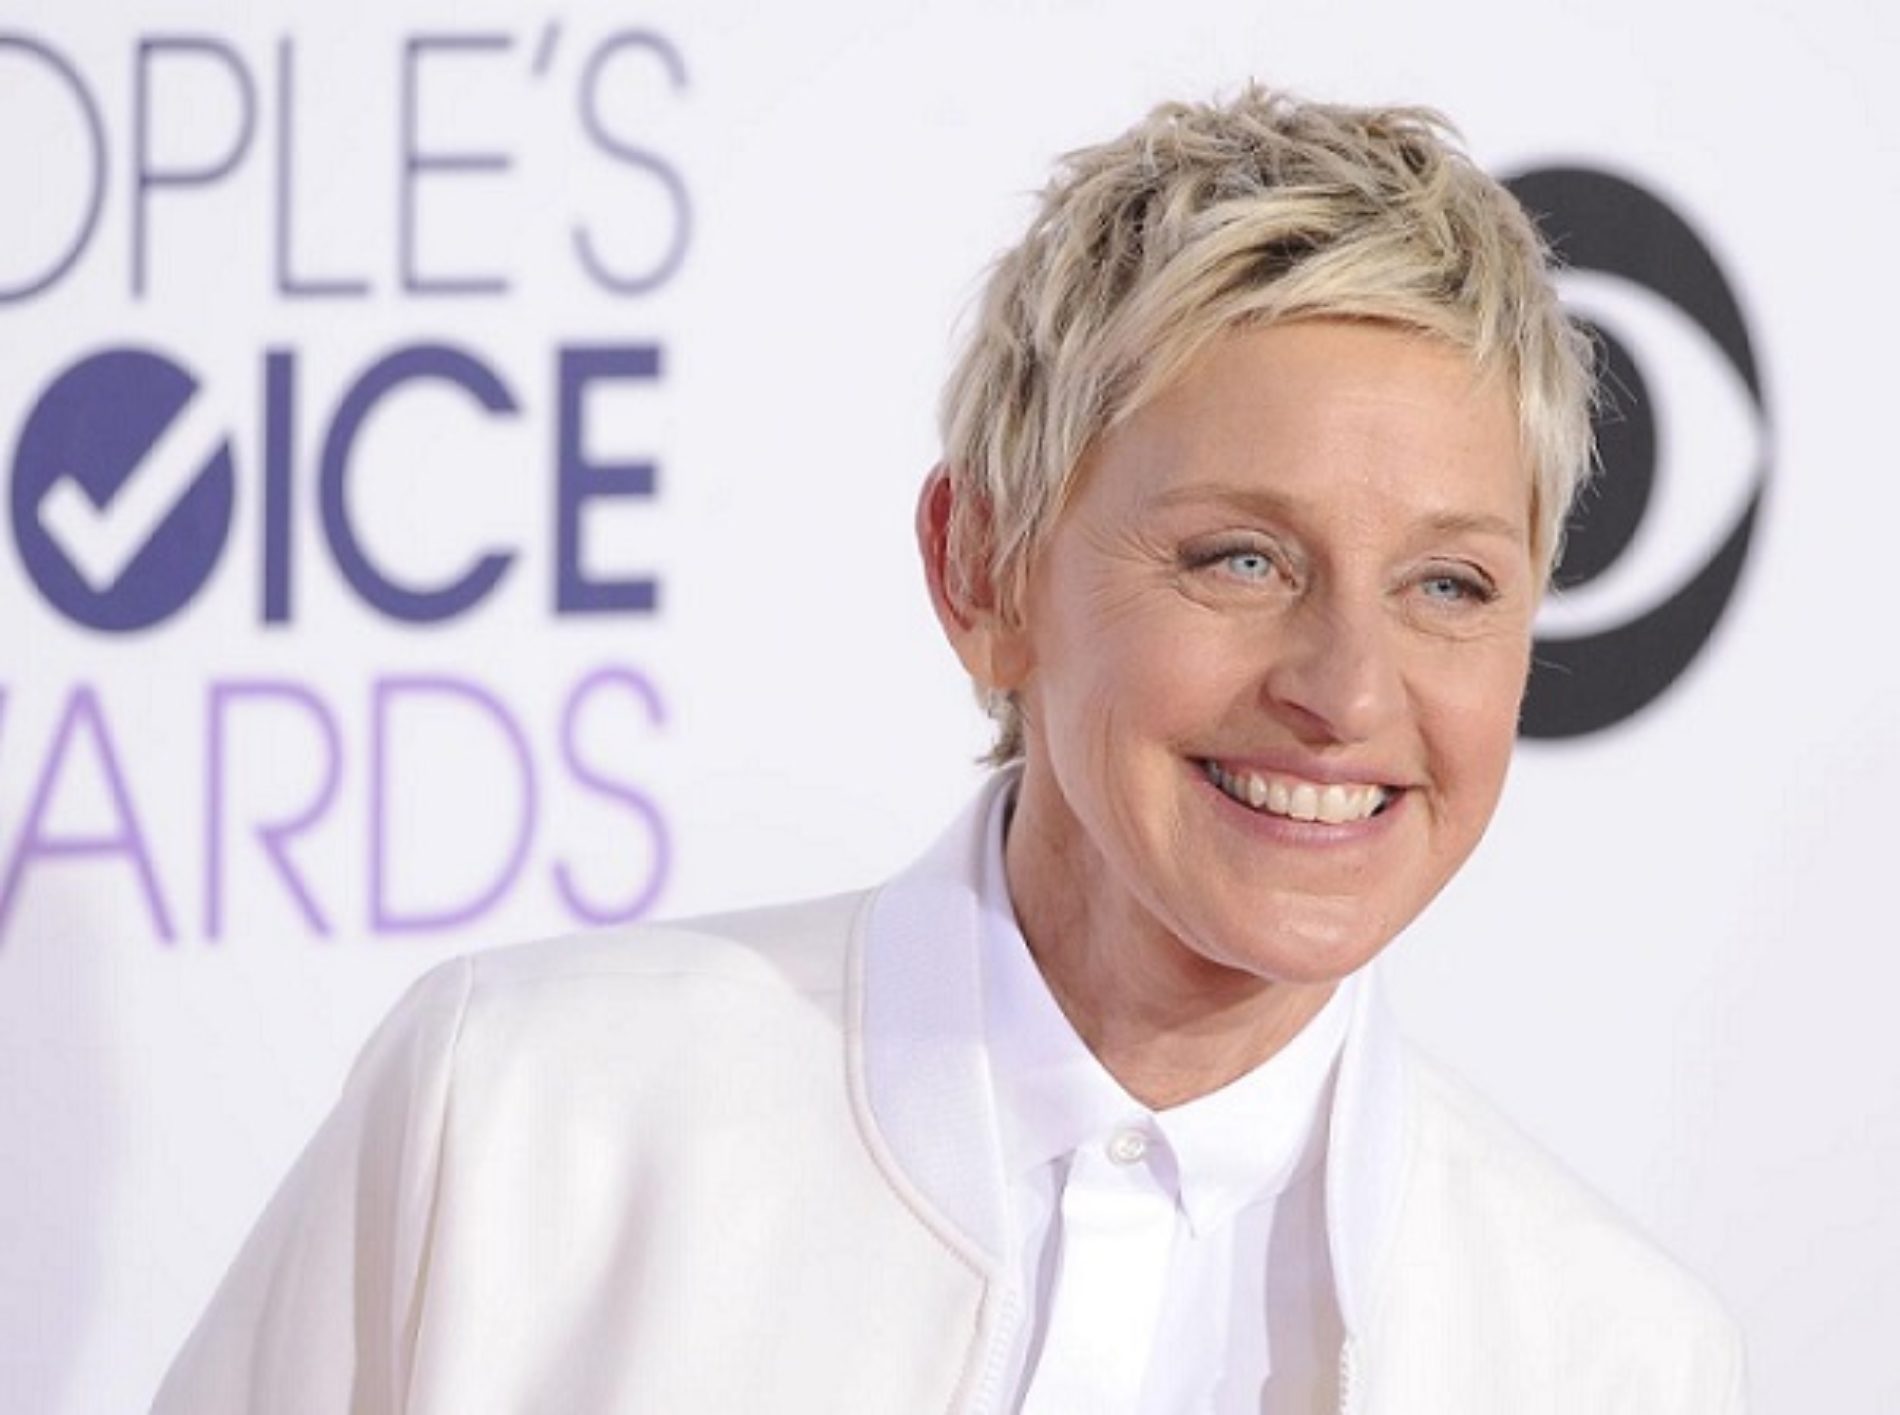 Pearls of Ellen DeGeneres’ Wisdom